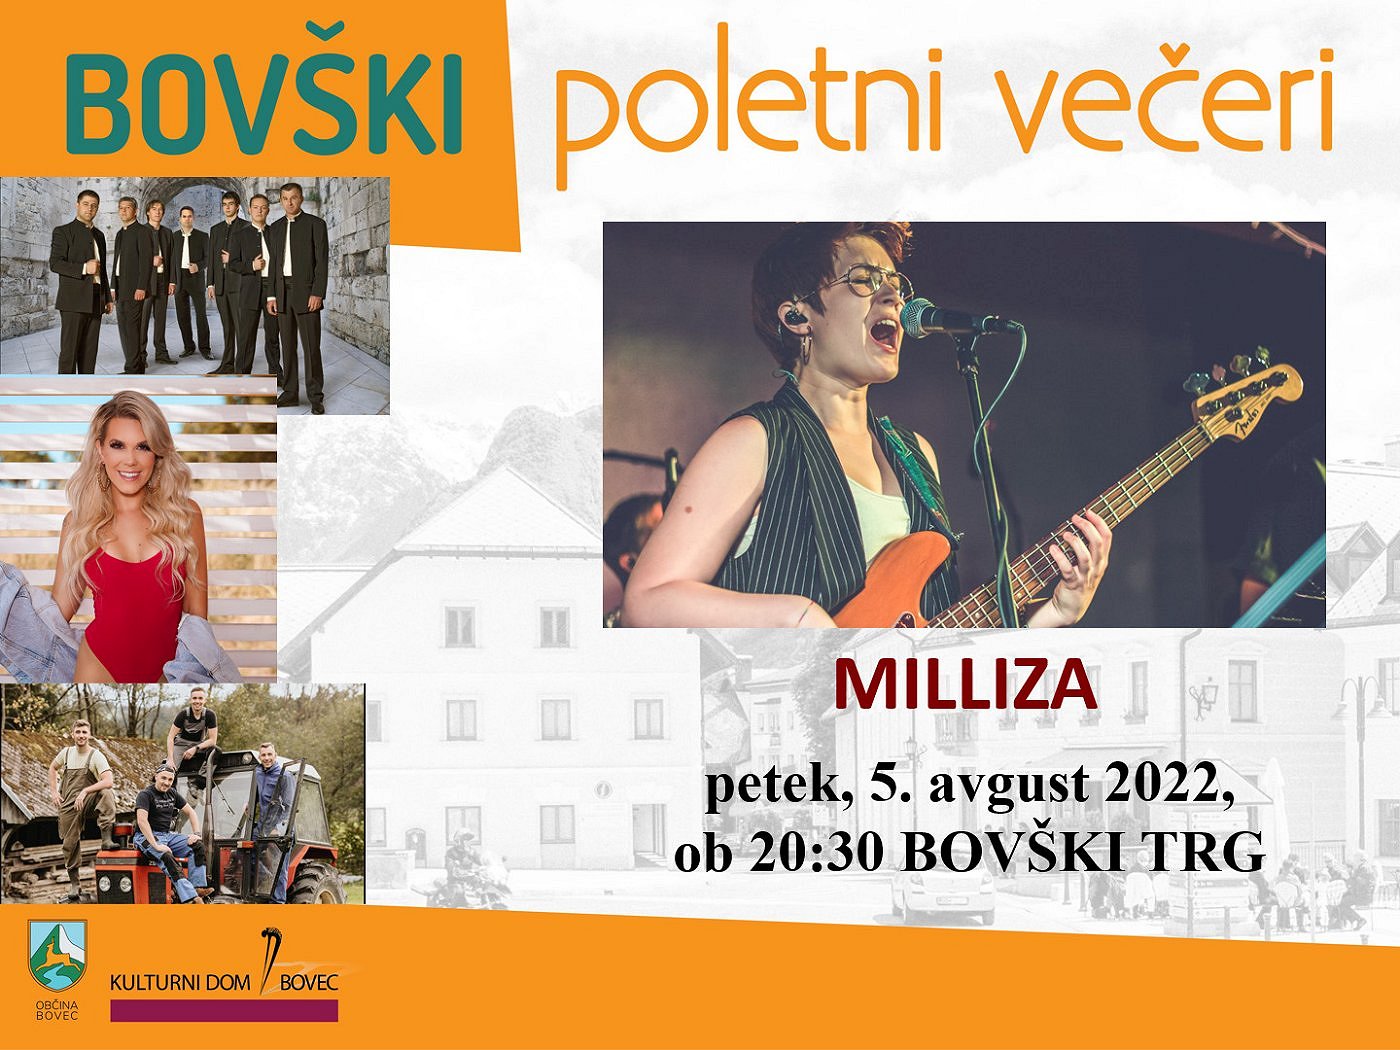 Bovški poletni večeri 2022 - Milliza